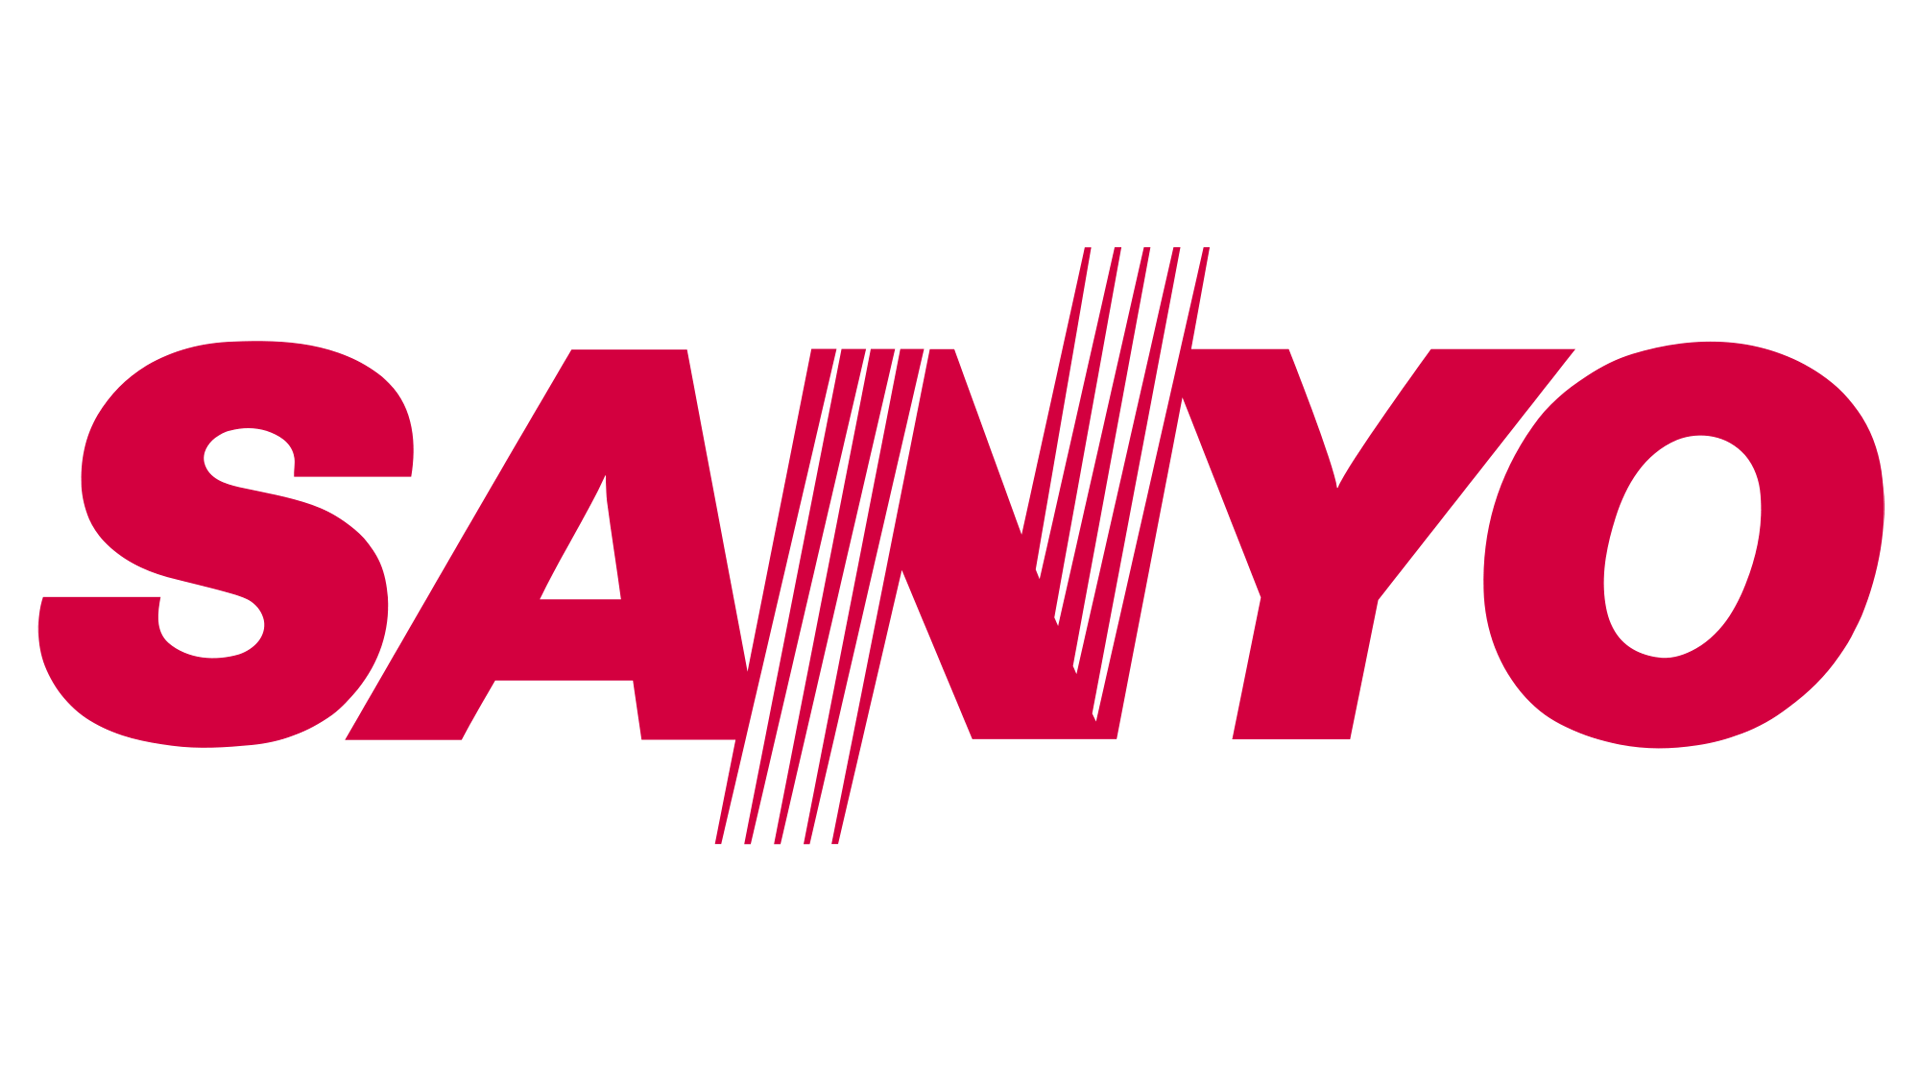 Electronics Company Logo - Sanyo Logo, Sanyo Symbol, Meaning, History and Evolution